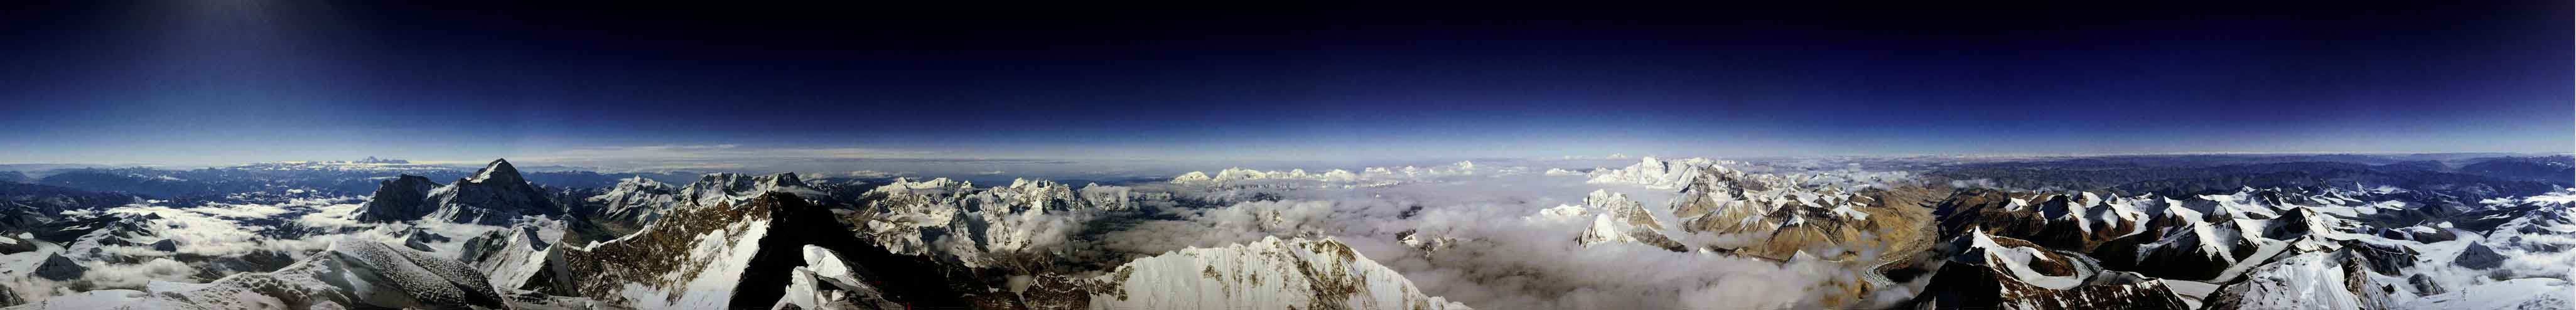 Das sehr breite Panorama zeigt eine Berglandaschaft, über der sich ein sehr dunkler blauer Himmel wölbt.